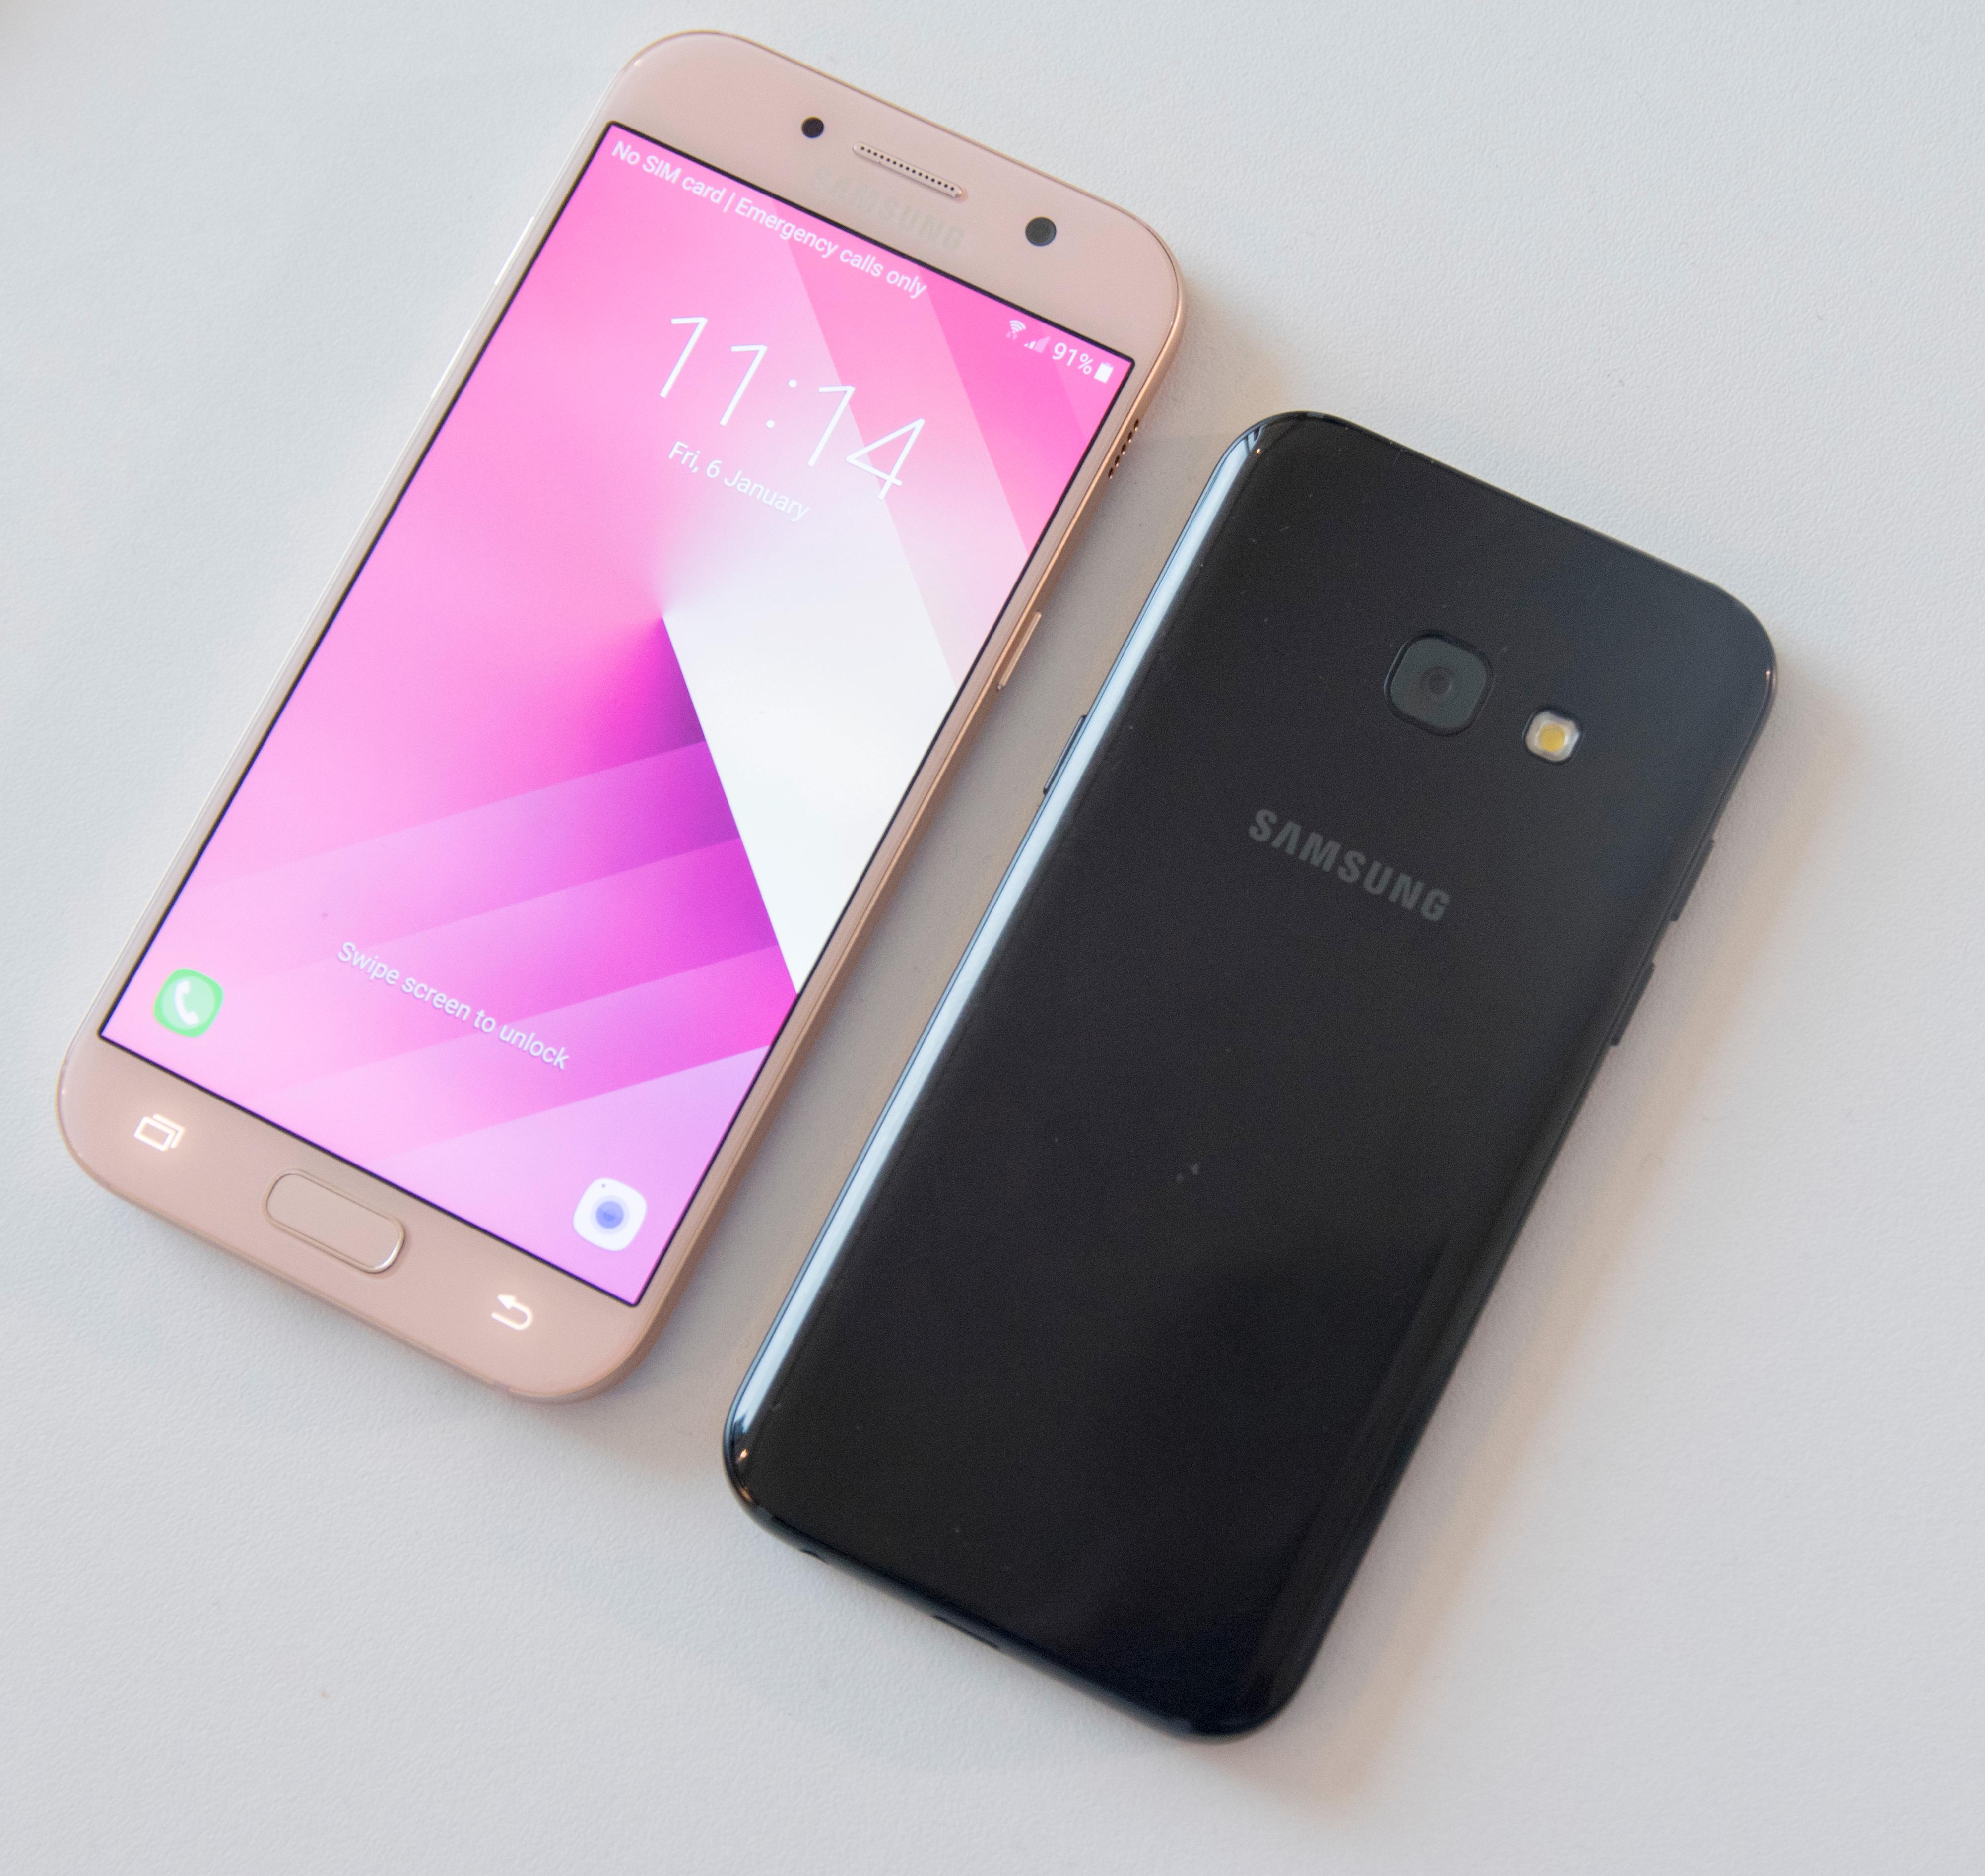 Galaxy A5 ved siden av Galaxy A3. Begge er tette, og byr på en forholdsvis lik brukeropplevelse. Inngangsprisen er rundt 3500 kroner.